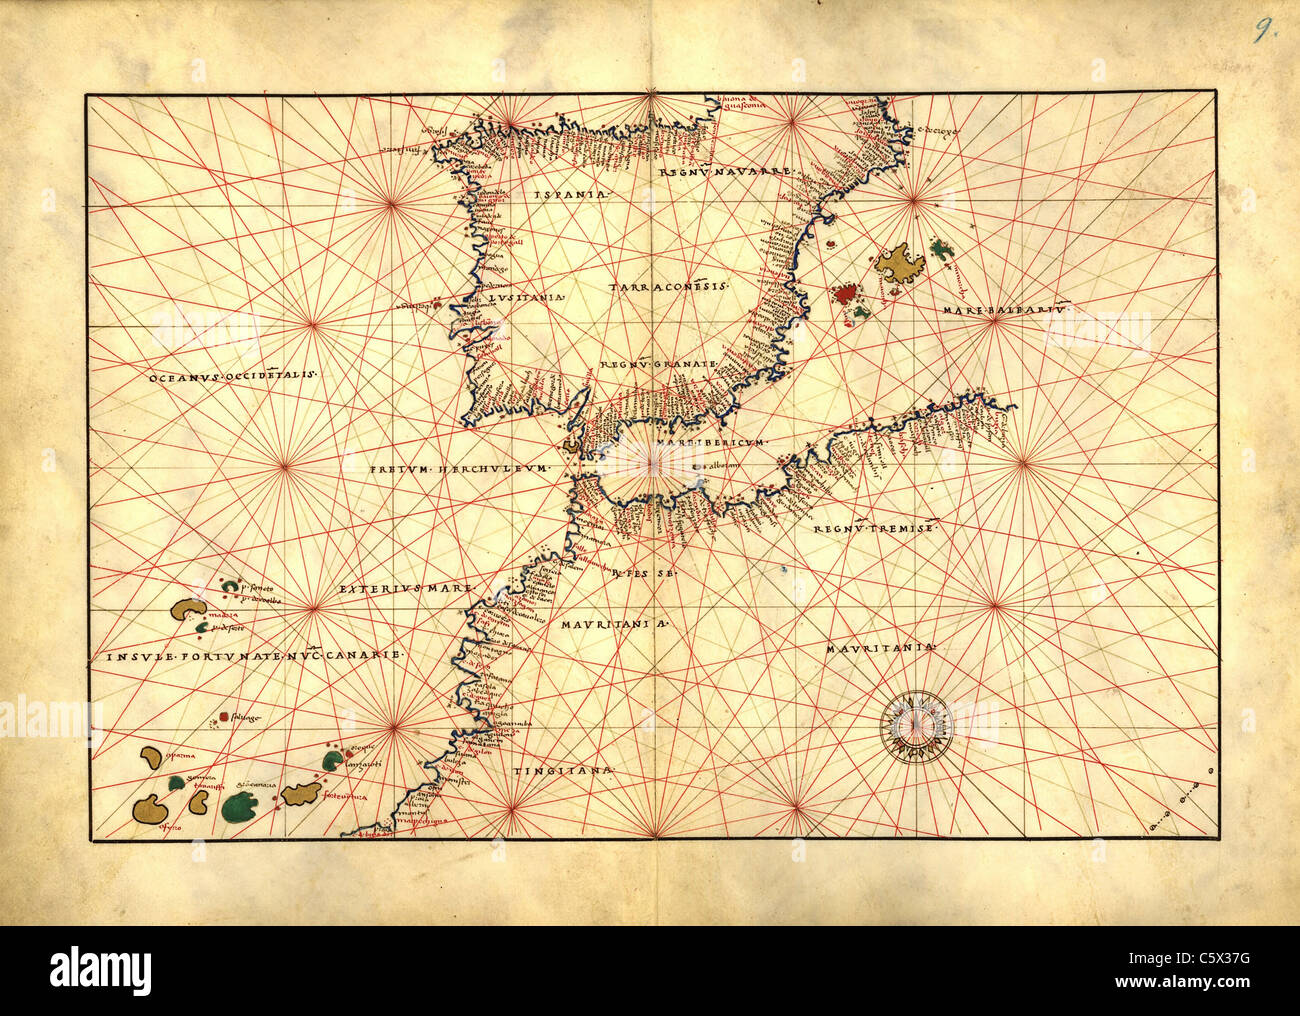 Straße von Gibraltar mit Nordwesten Afrika und Spanien - Antiquarische Karte oder Portolan Chart aus dem 16. Jahrhundert Portolan Atlas Stockfoto